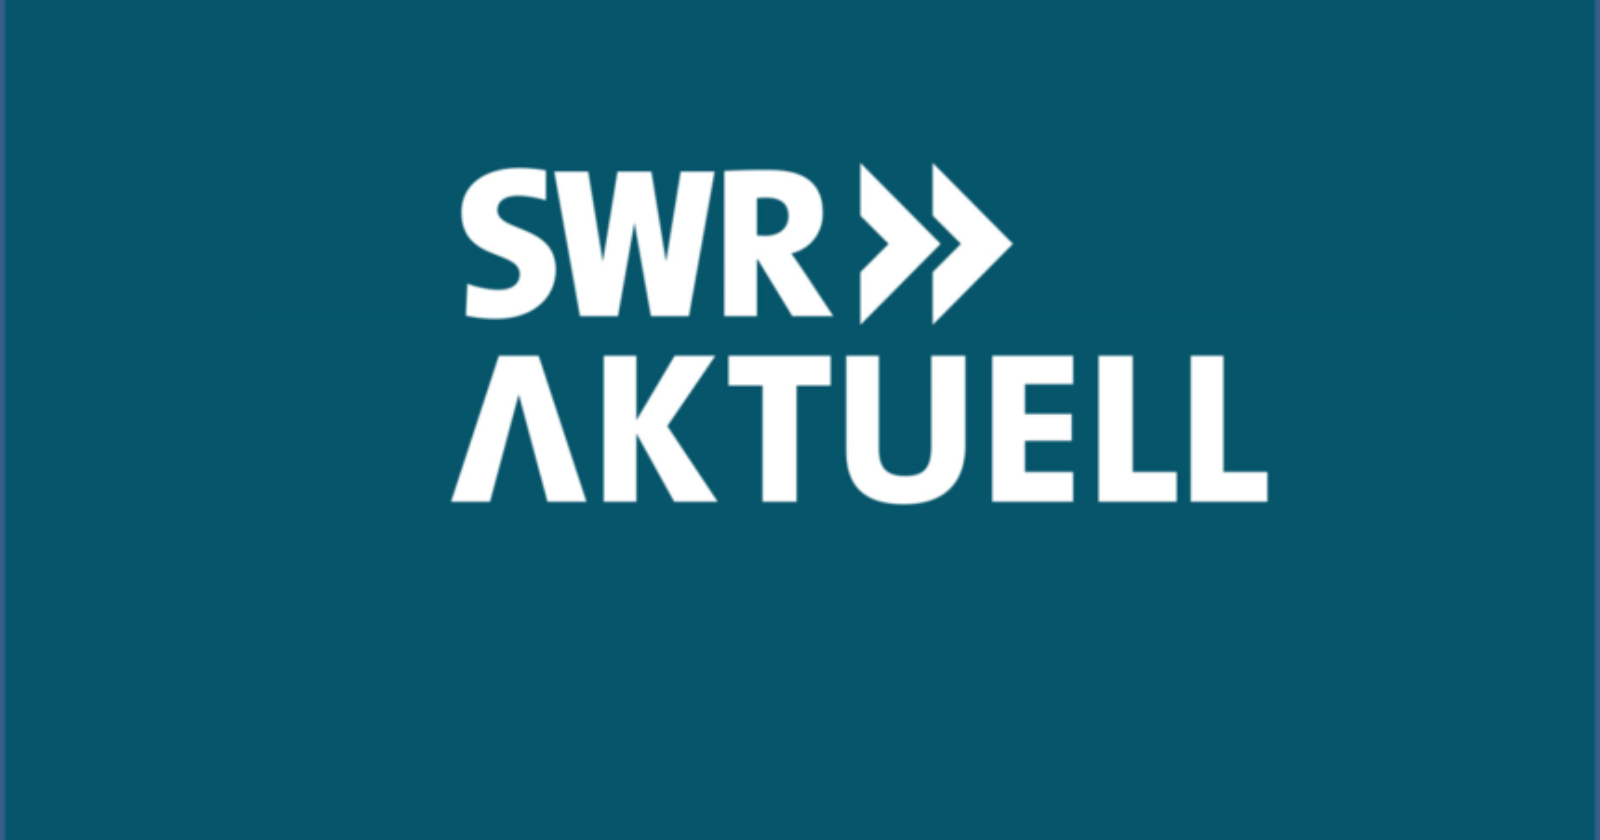 SWR Aktuell berichtet über Warnstreiks und Tarifverhandlungen in der Gebäudereinigung